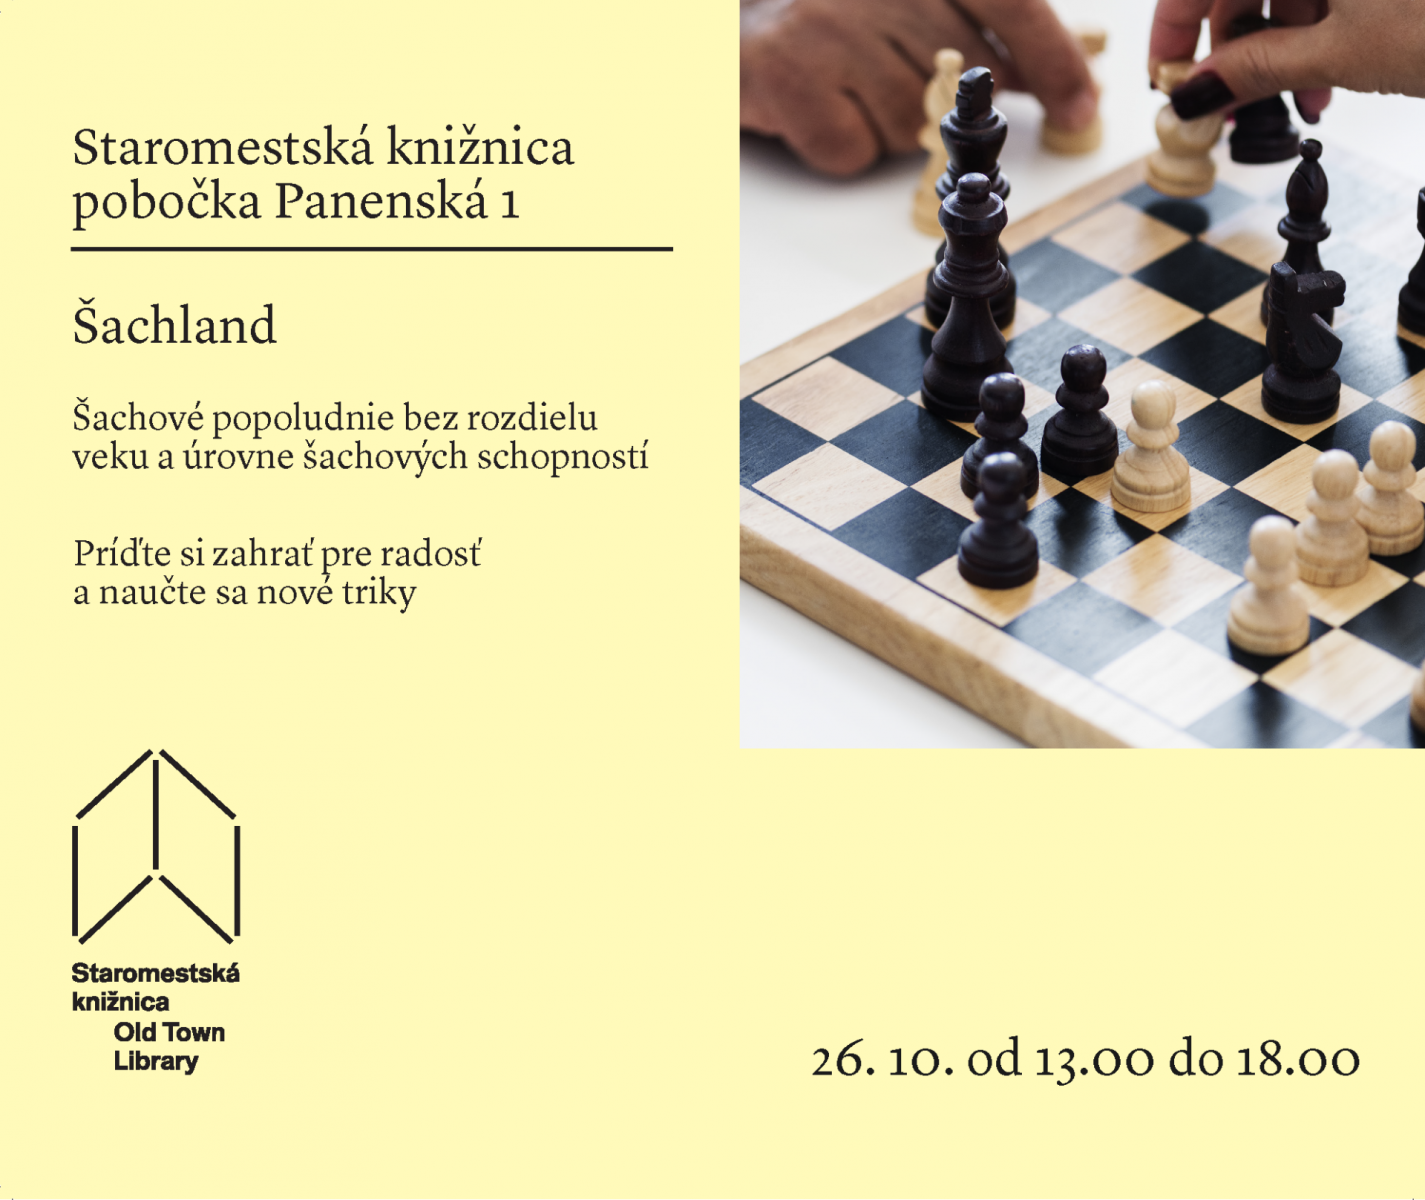 Šachové popoludnie v Staromestskej knižnici  na Panenskej 1 vo štvrtok 26. októbra od 13.00 do 18.00